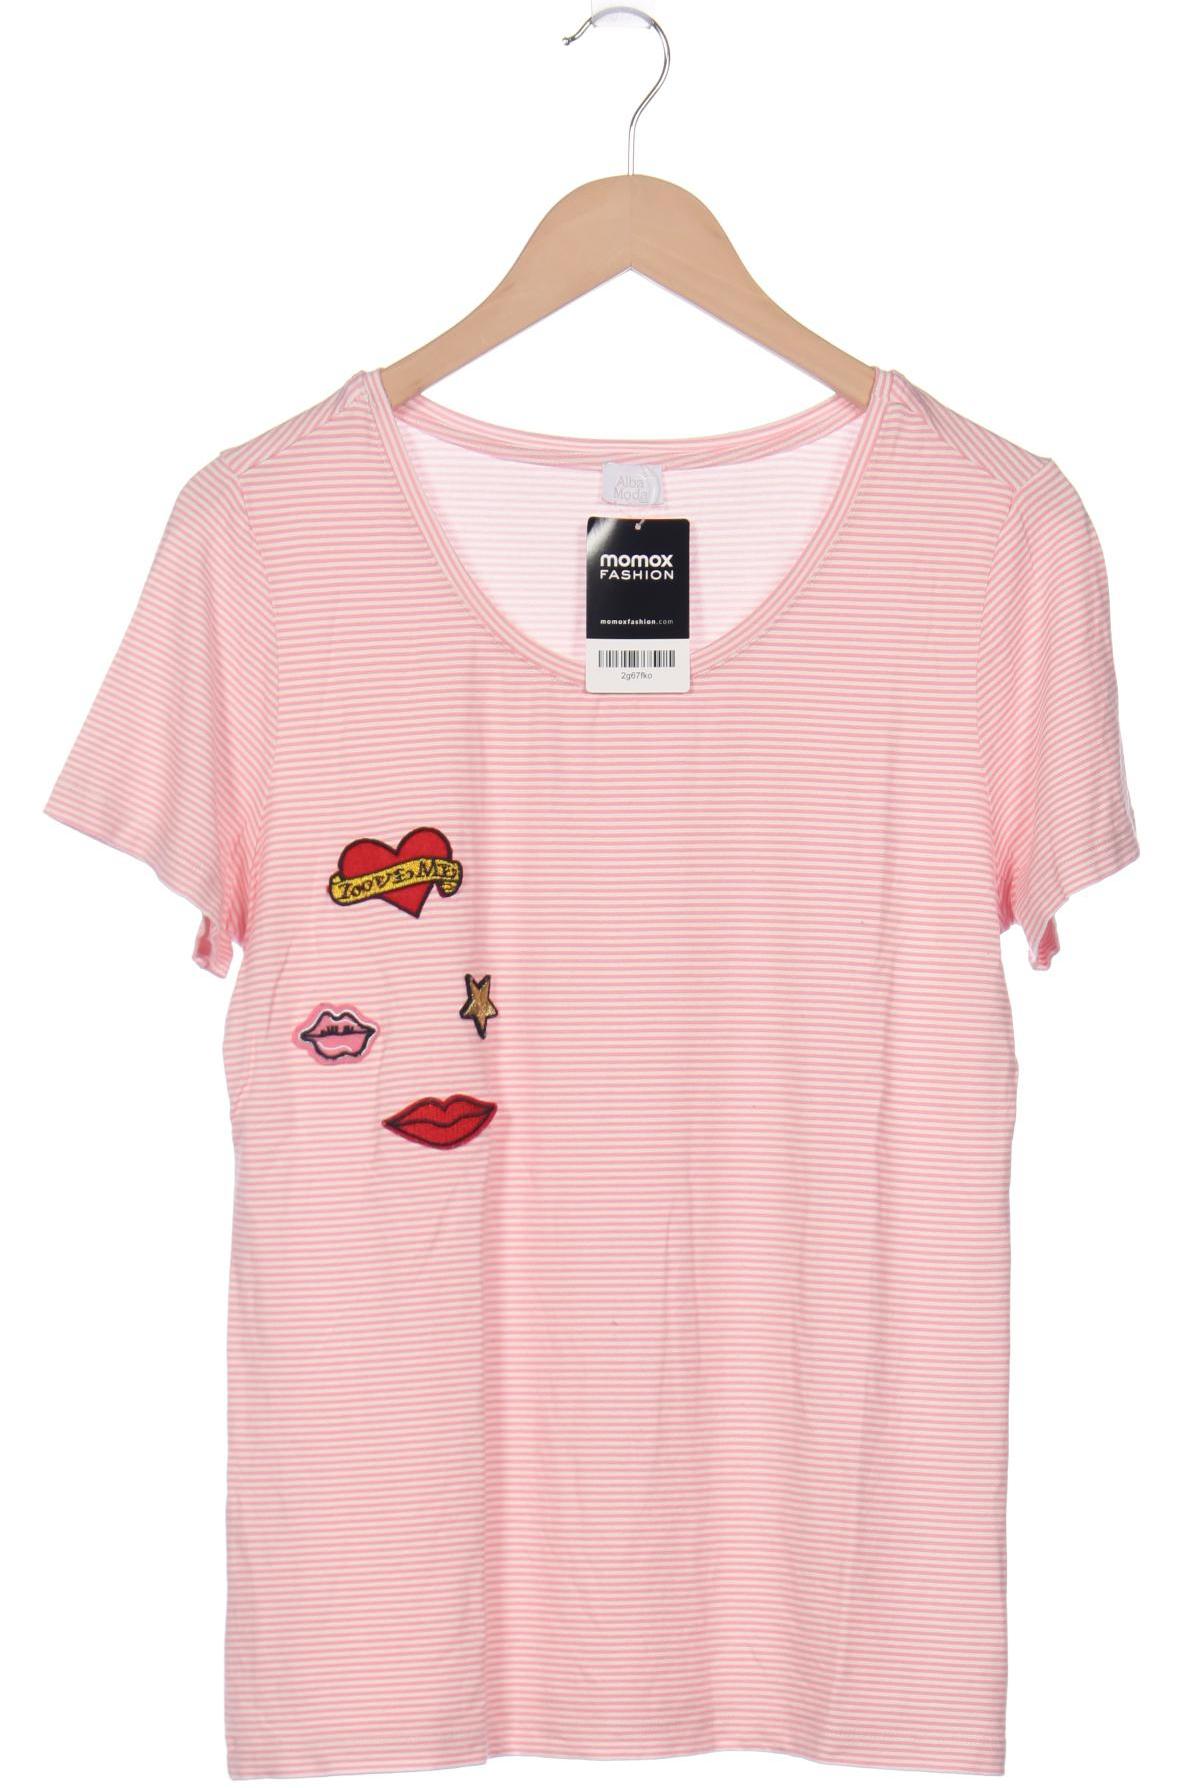 Alba Moda Damen T-Shirt, pink von alba moda